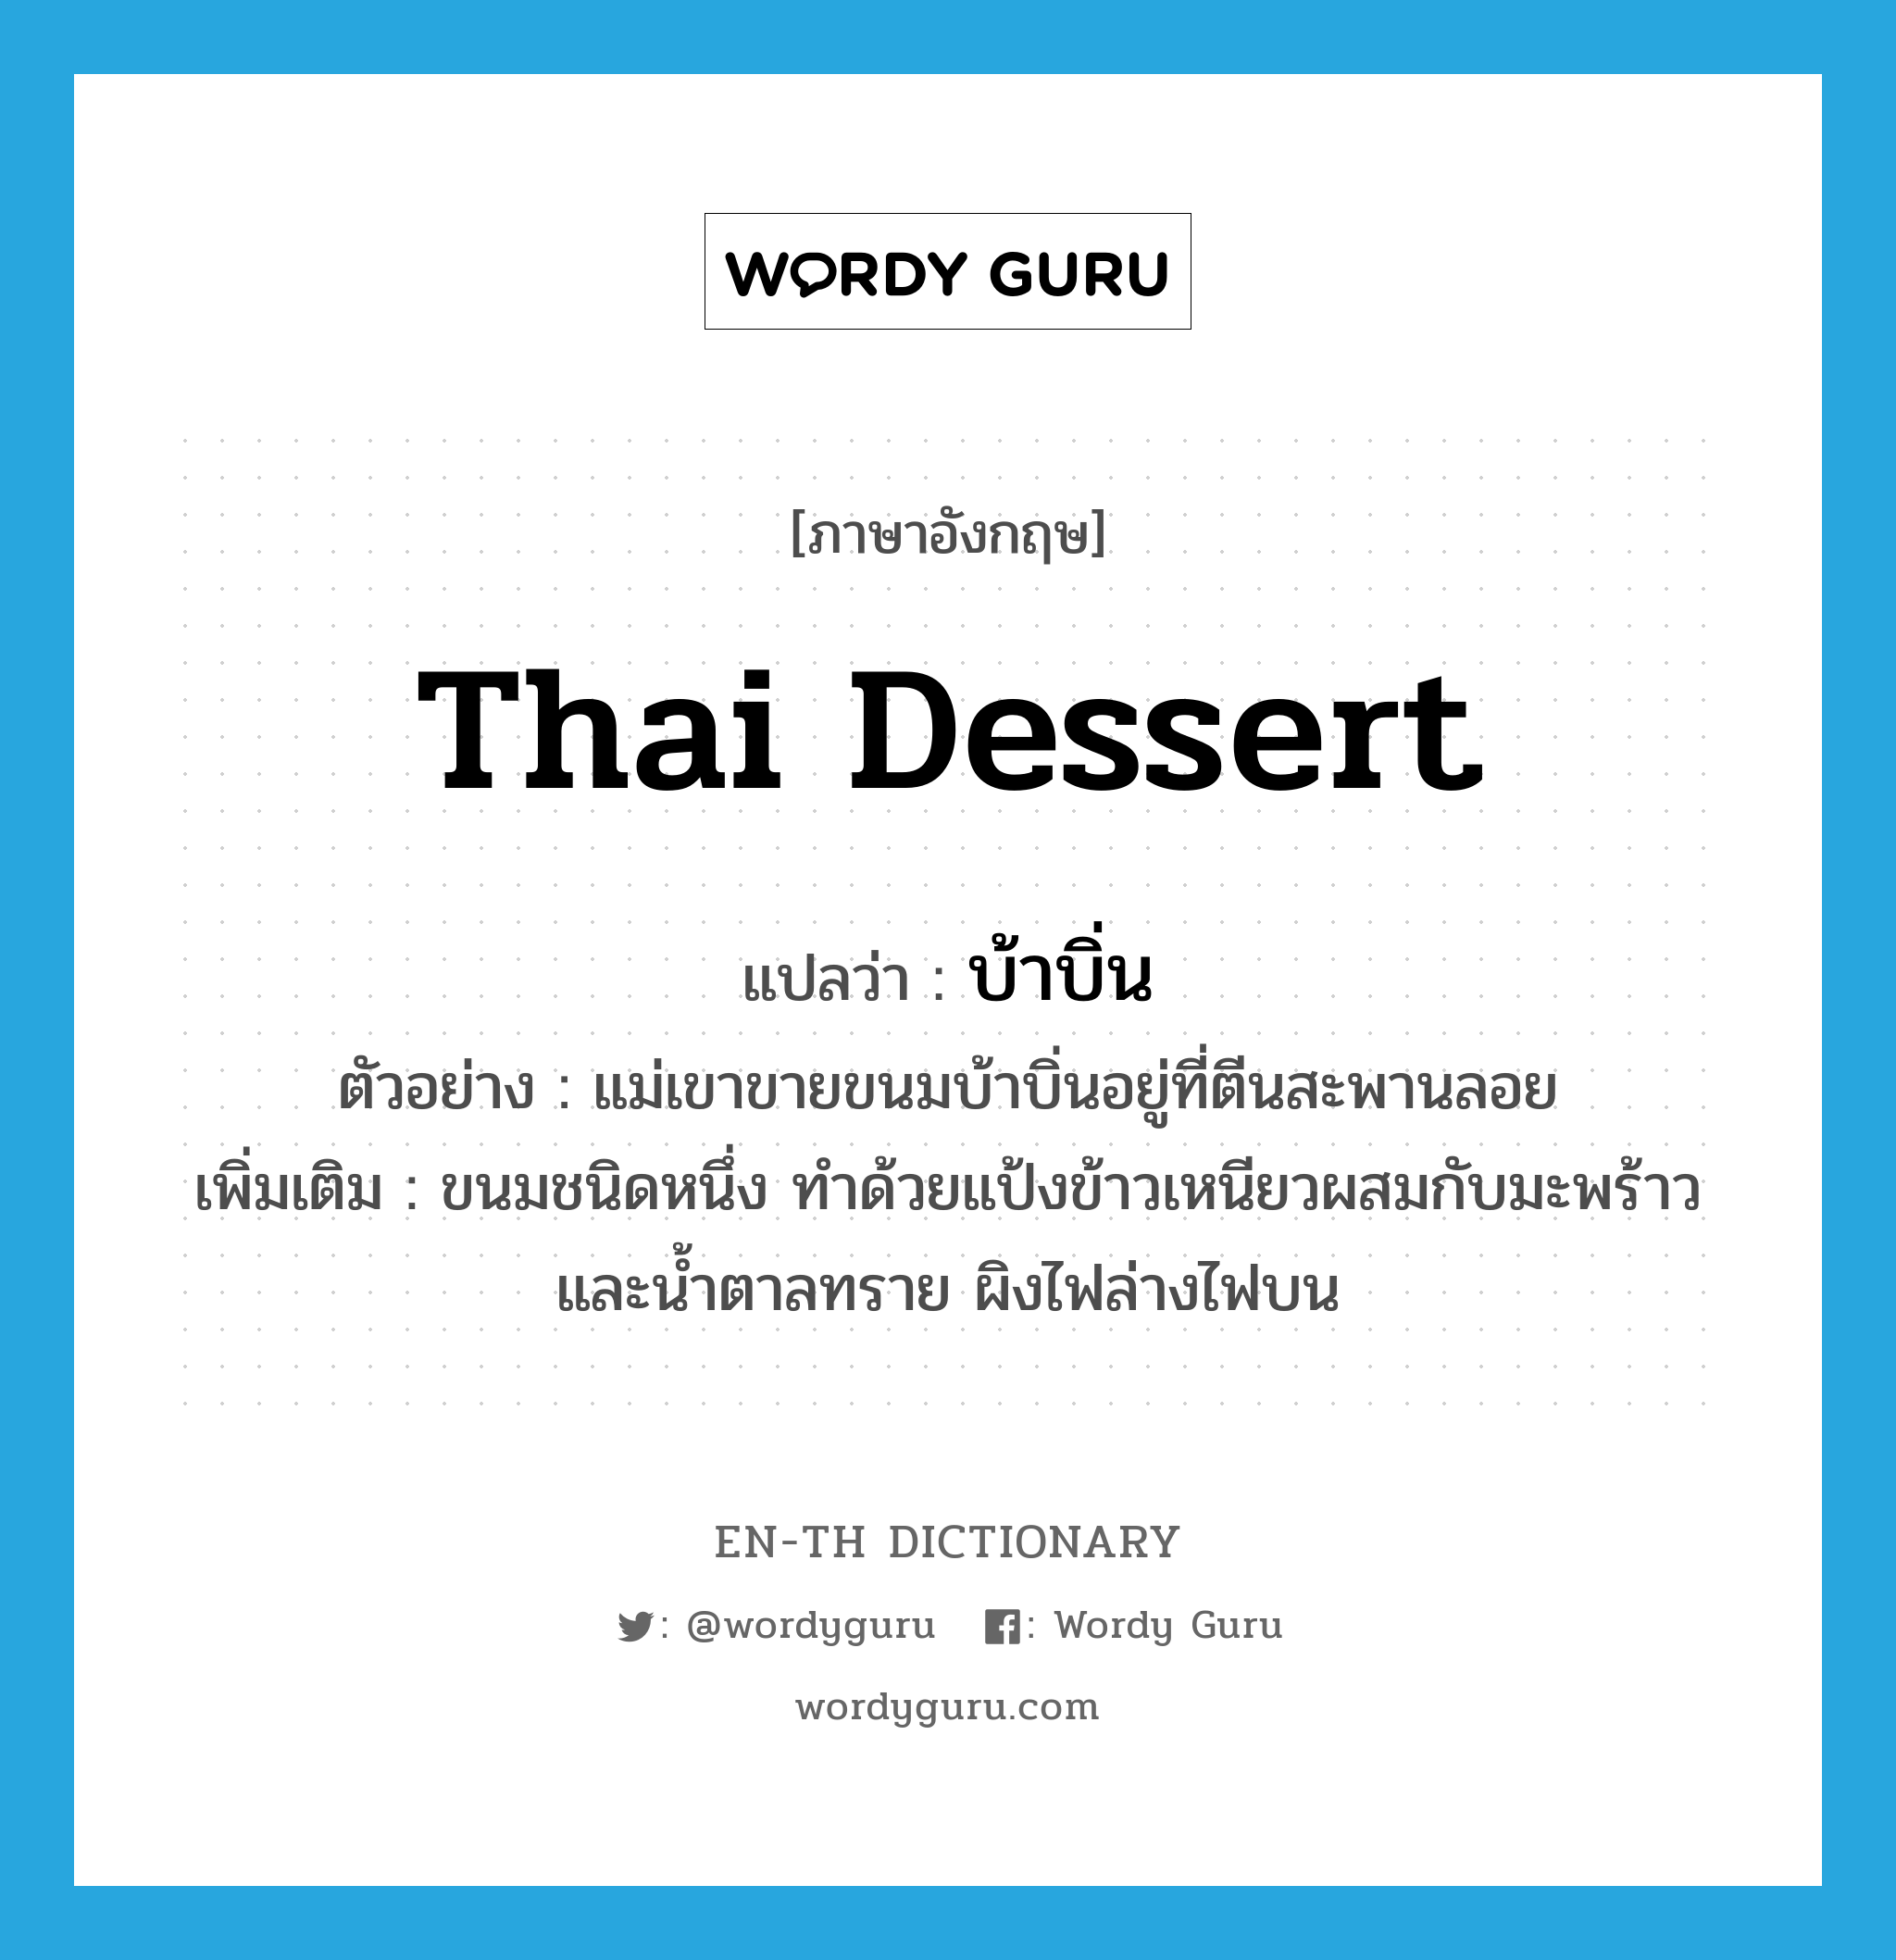 Thai dessert แปลว่า?, คำศัพท์ภาษาอังกฤษ Thai dessert แปลว่า บ้าบิ่น ประเภท N ตัวอย่าง แม่เขาขายขนมบ้าบิ่นอยู่ที่ตีนสะพานลอย เพิ่มเติม ขนมชนิดหนึ่ง ทำด้วยแป้งข้าวเหนียวผสมกับมะพร้าวและน้ำตาลทราย ผิงไฟล่างไฟบน หมวด N